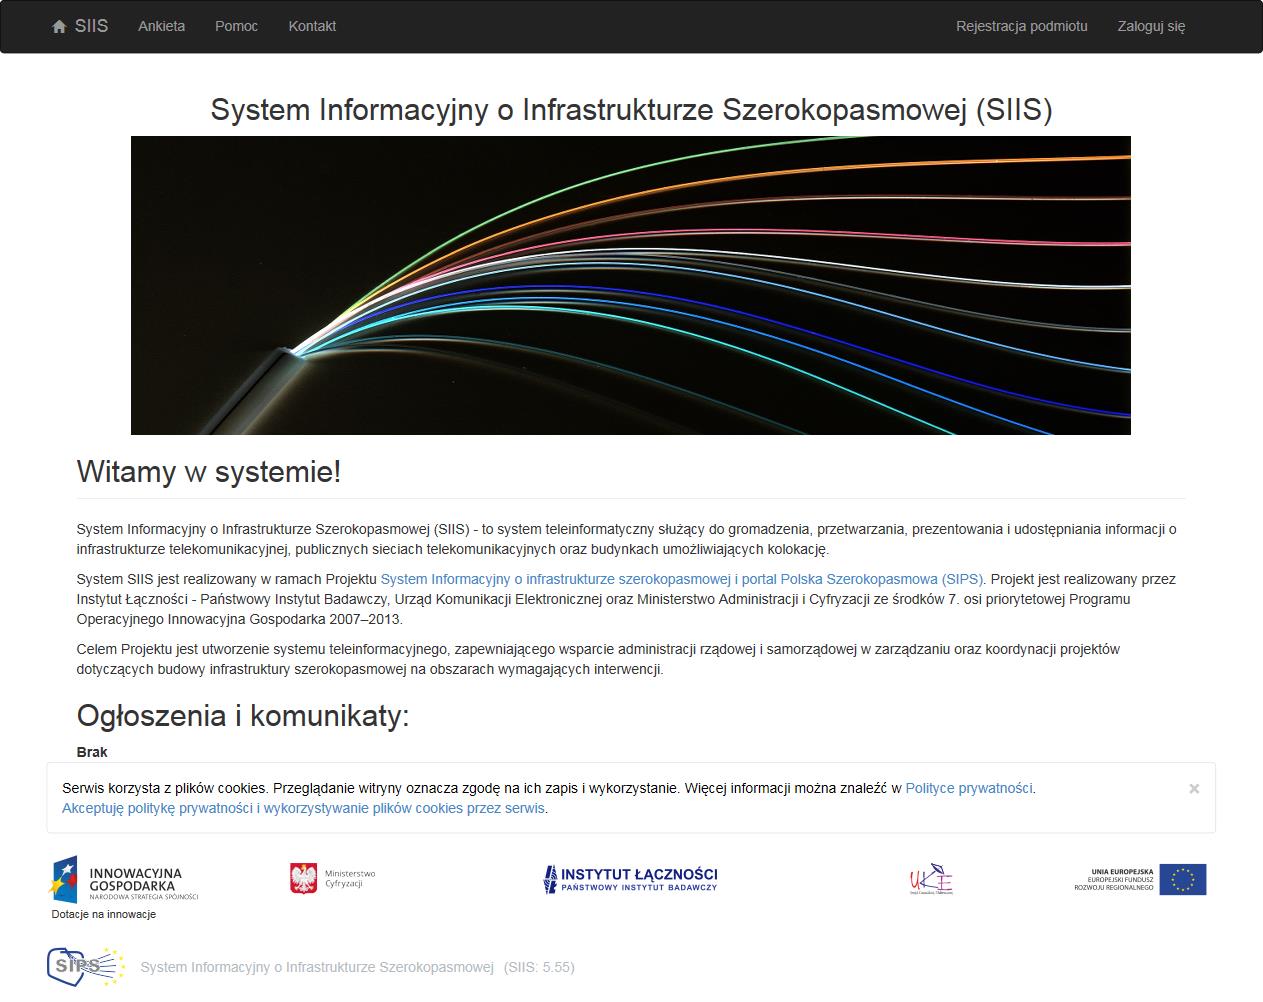 3 Logowanie w systemie oraz rejestracja podmiotu Logowanie do systemu oraz rejestracja podmiotu następuje po połączeniu z portalem SIIS na stronie: https://form.teleinfrastruktura.gov.pl Rys. 1.